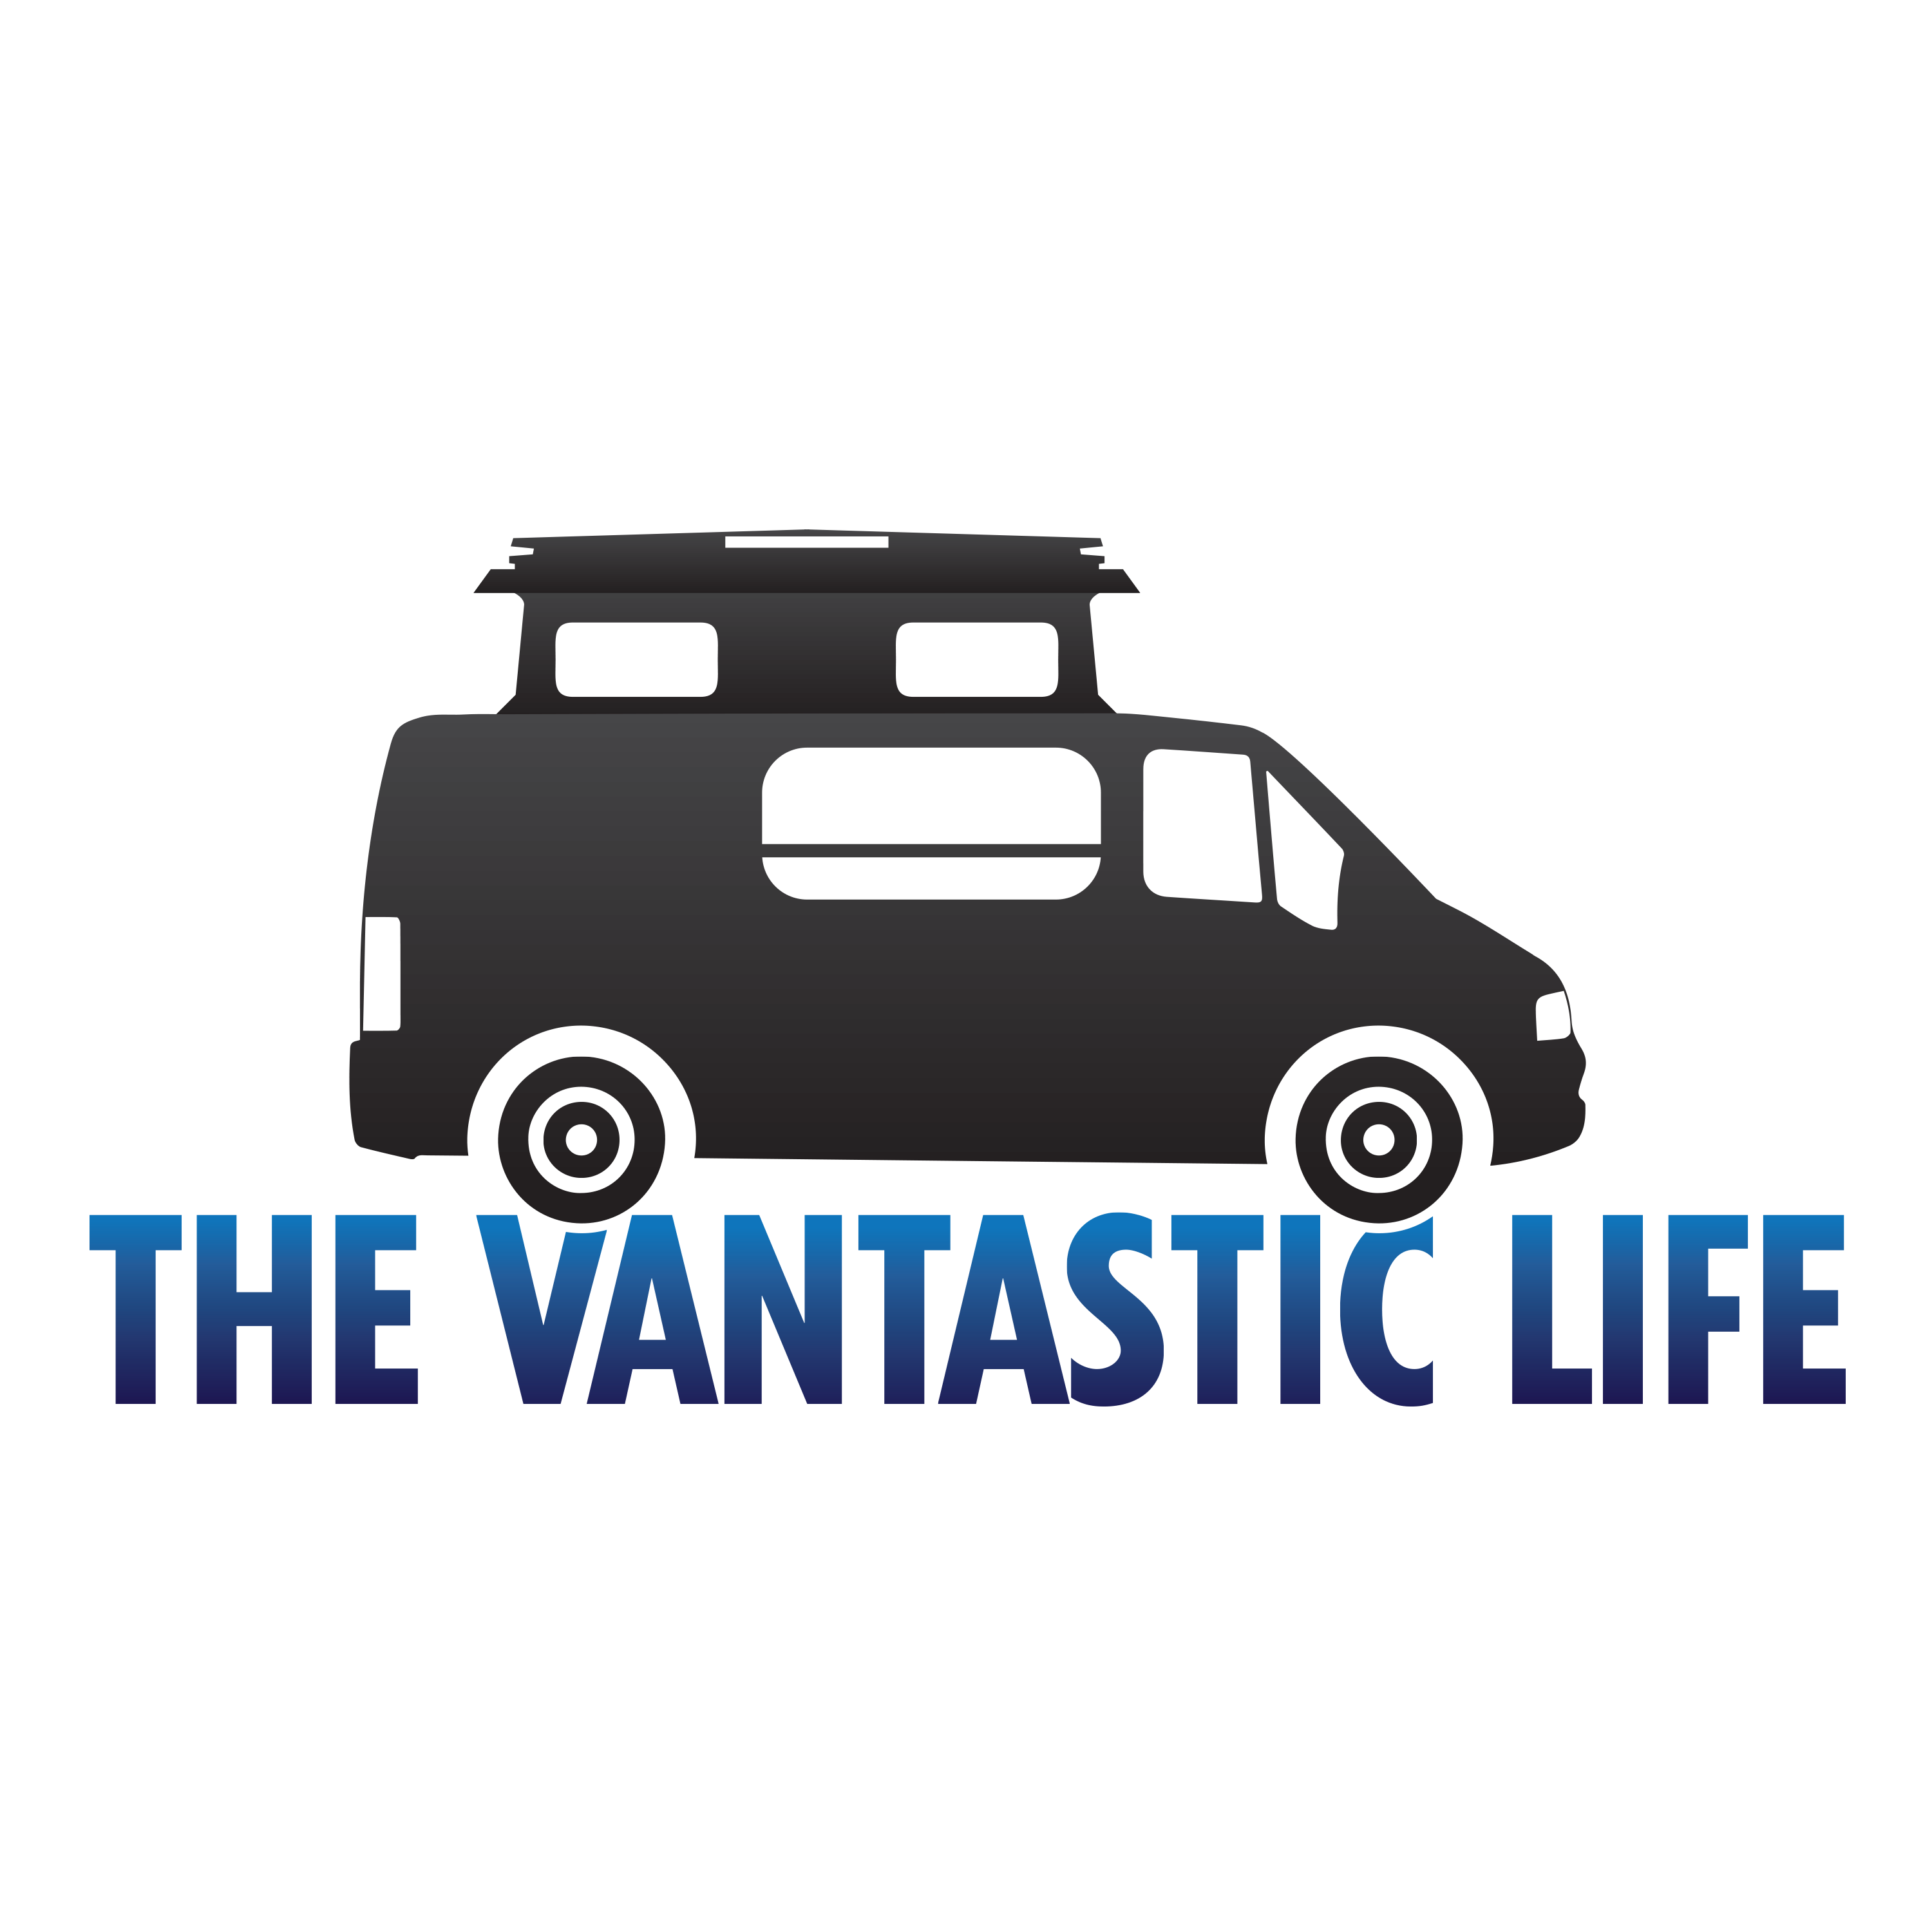 The Vantastic Life